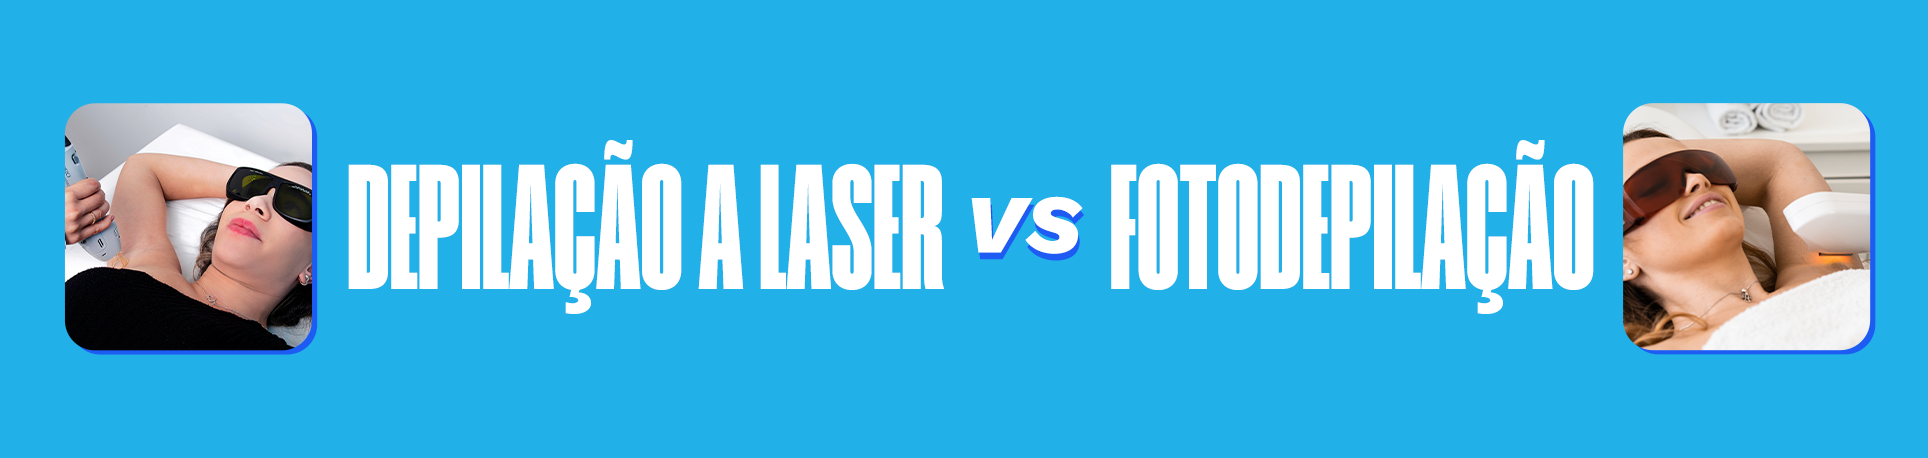 Depilação a Laser vs. Fotodepilação: Entenda as Diferenças